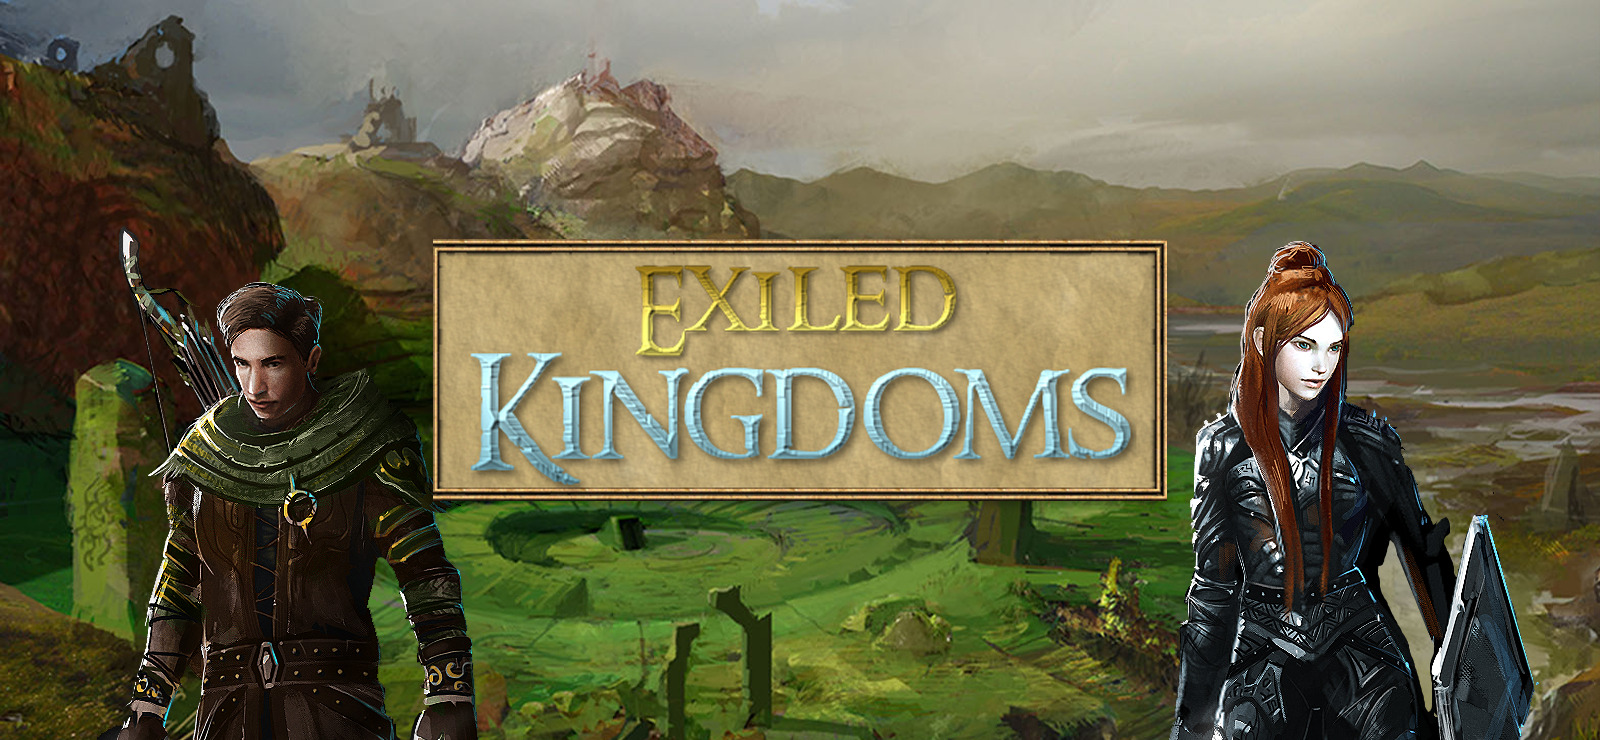 exiled kingdoms free mac download